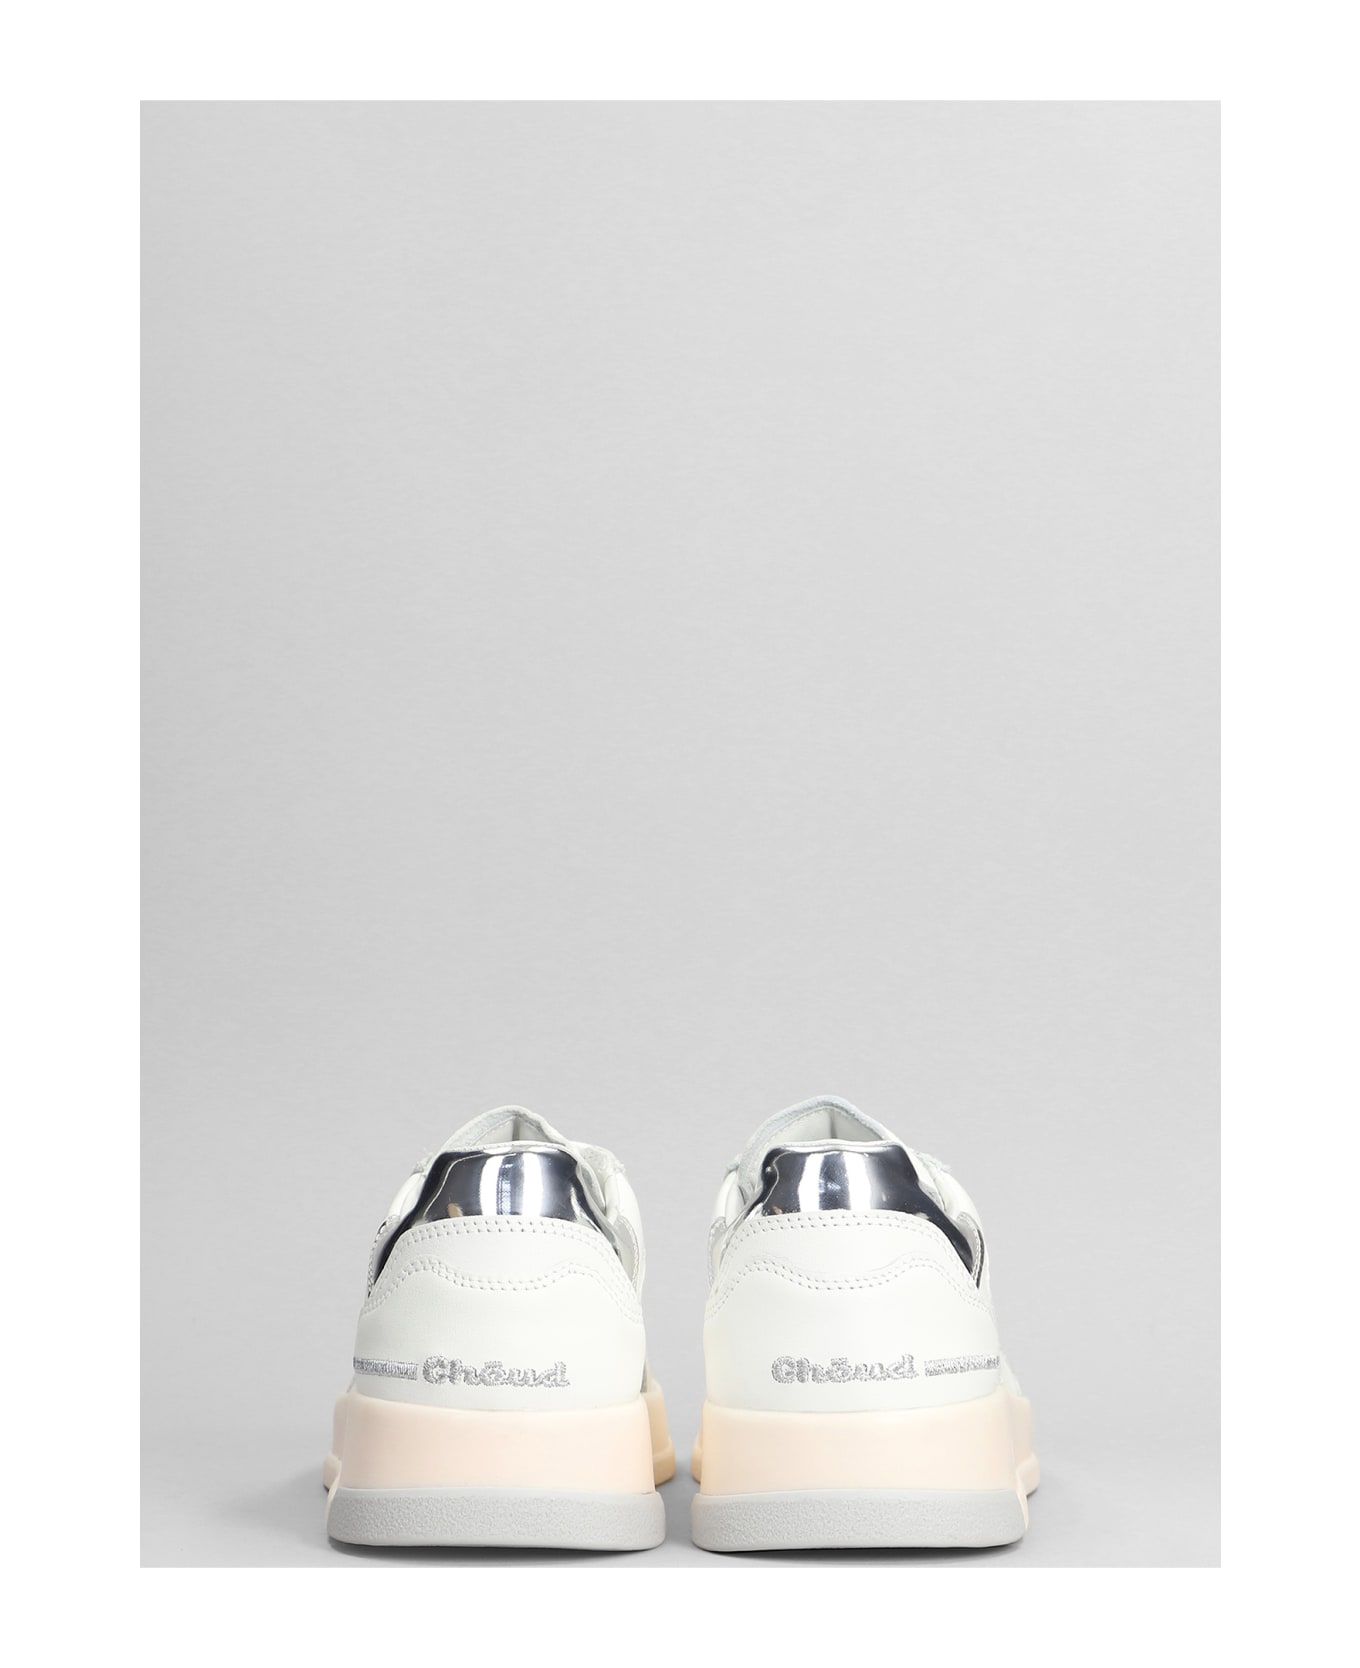 GHOUD Tweener Low Sneakers In White Leather - White